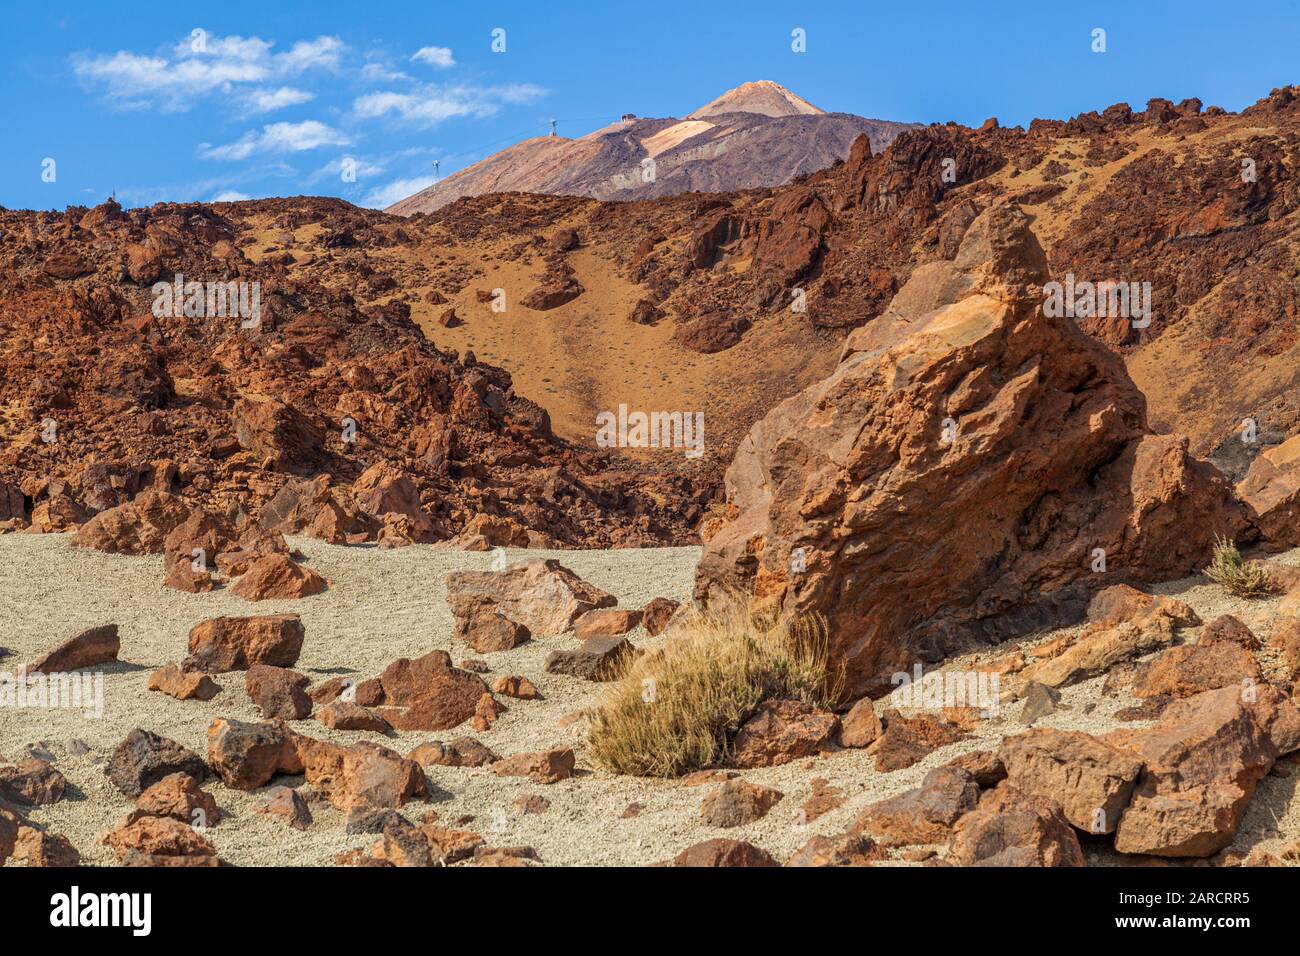 Vue sur le pic du Mont teide depuis le parc national paysage lunaire rocheux du désert tenerife Espagne depuis le parc national du Mont teide Banque D'Images